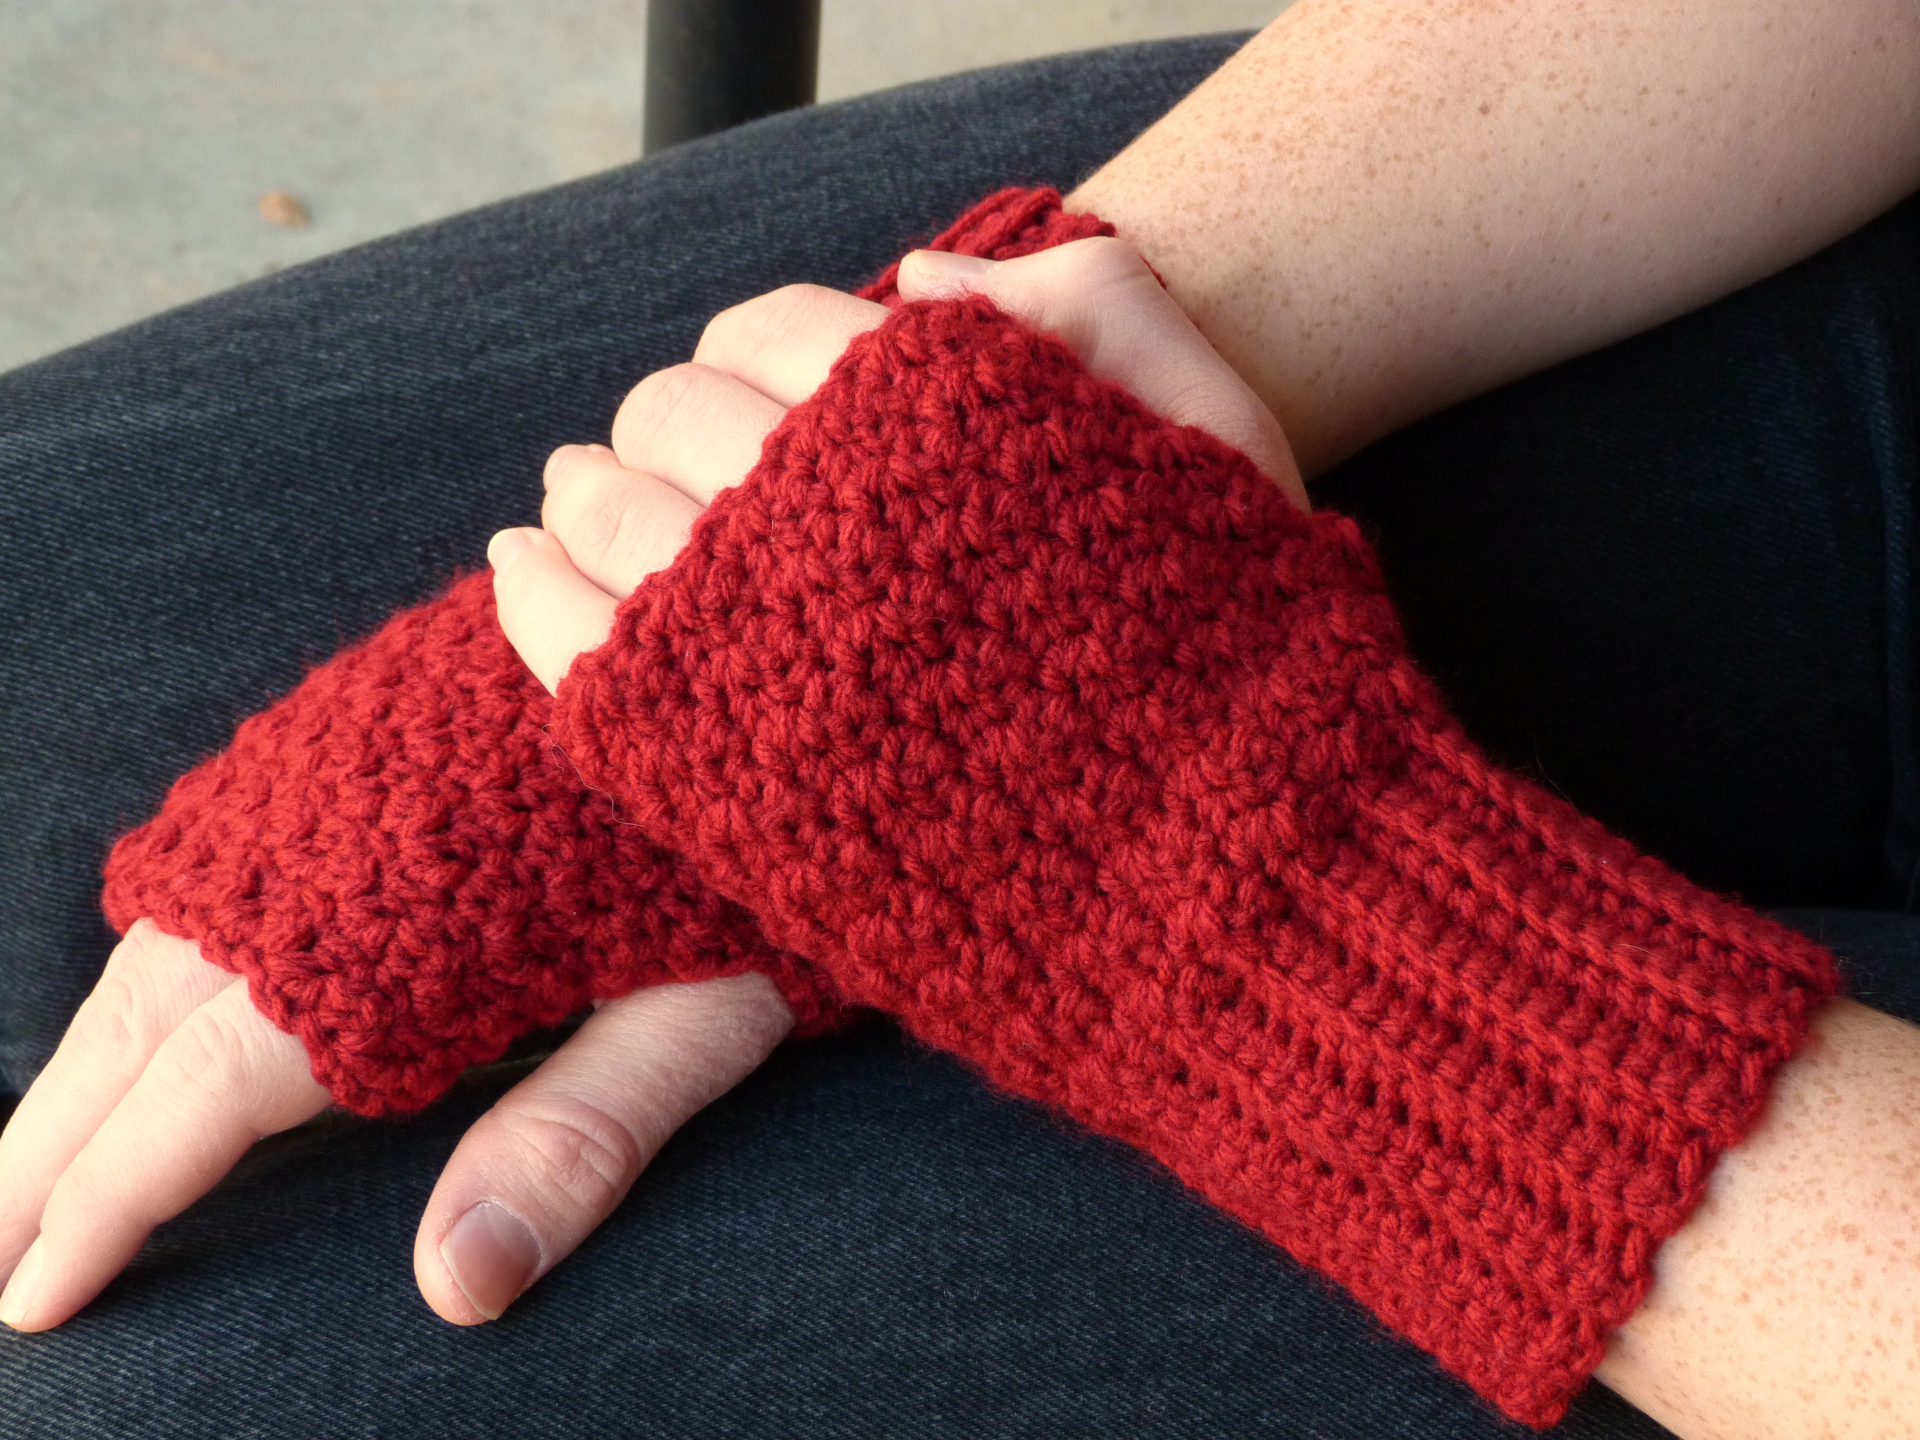 How To Crochet A Fingerless Glove